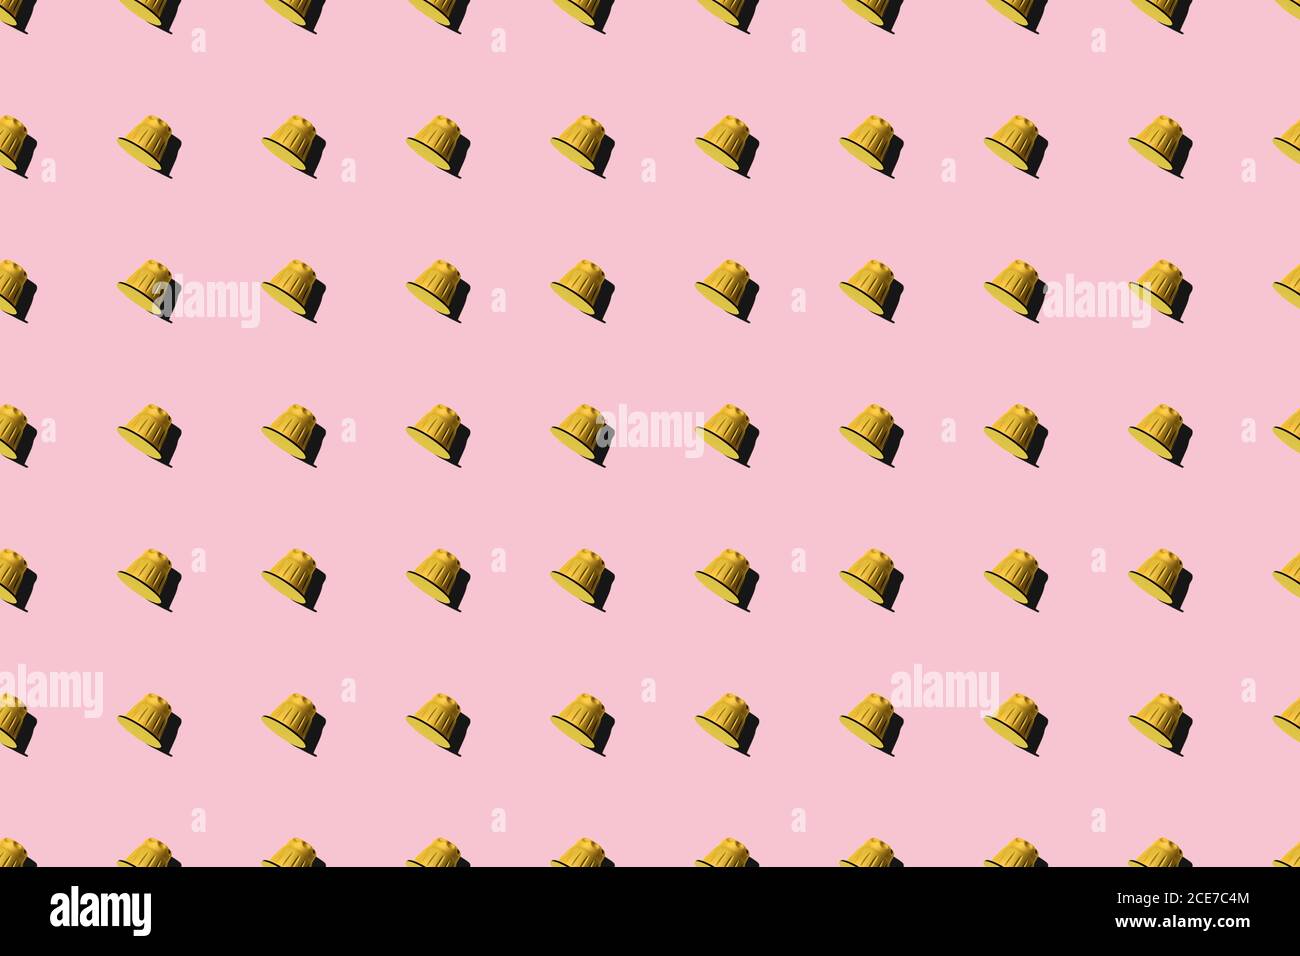 Ansicht der gelben Kaffeepads in geraden Reihen Als Nahtloses Muster auf rosa Hintergrund Stockfoto